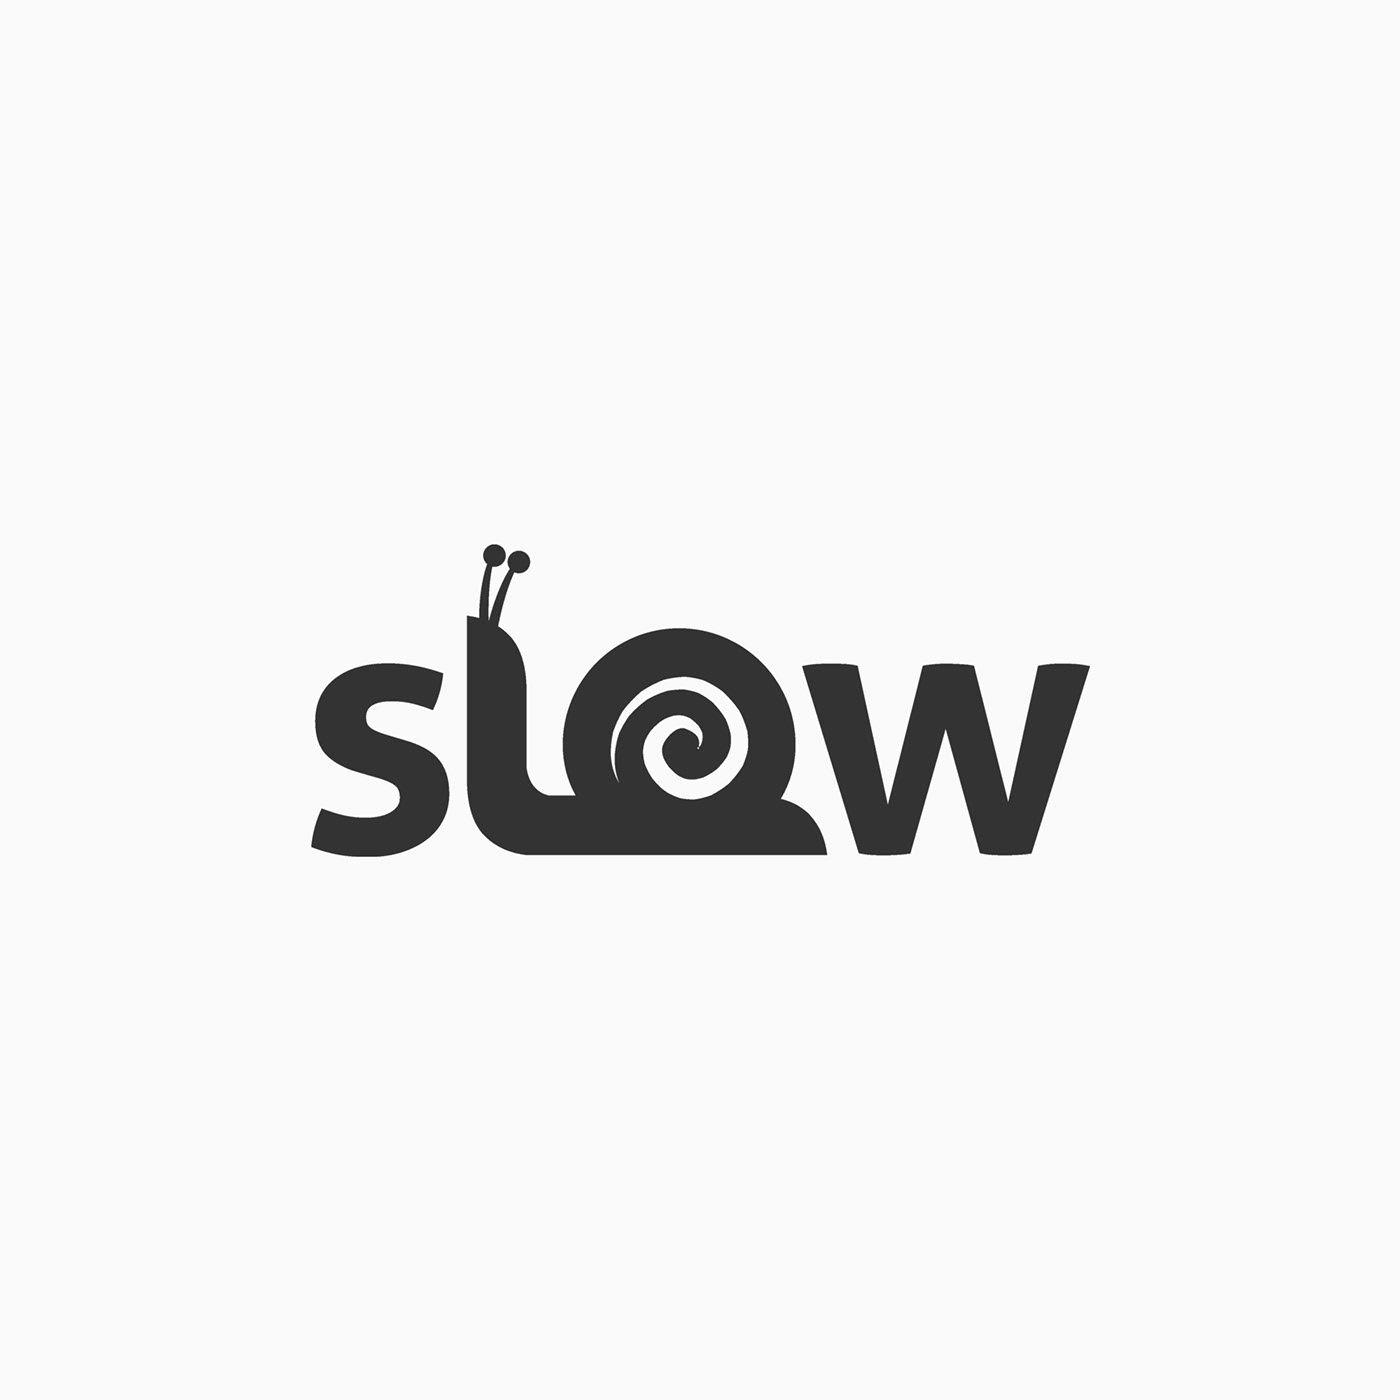 Slow Logo - slow by finalidea on Dribbble